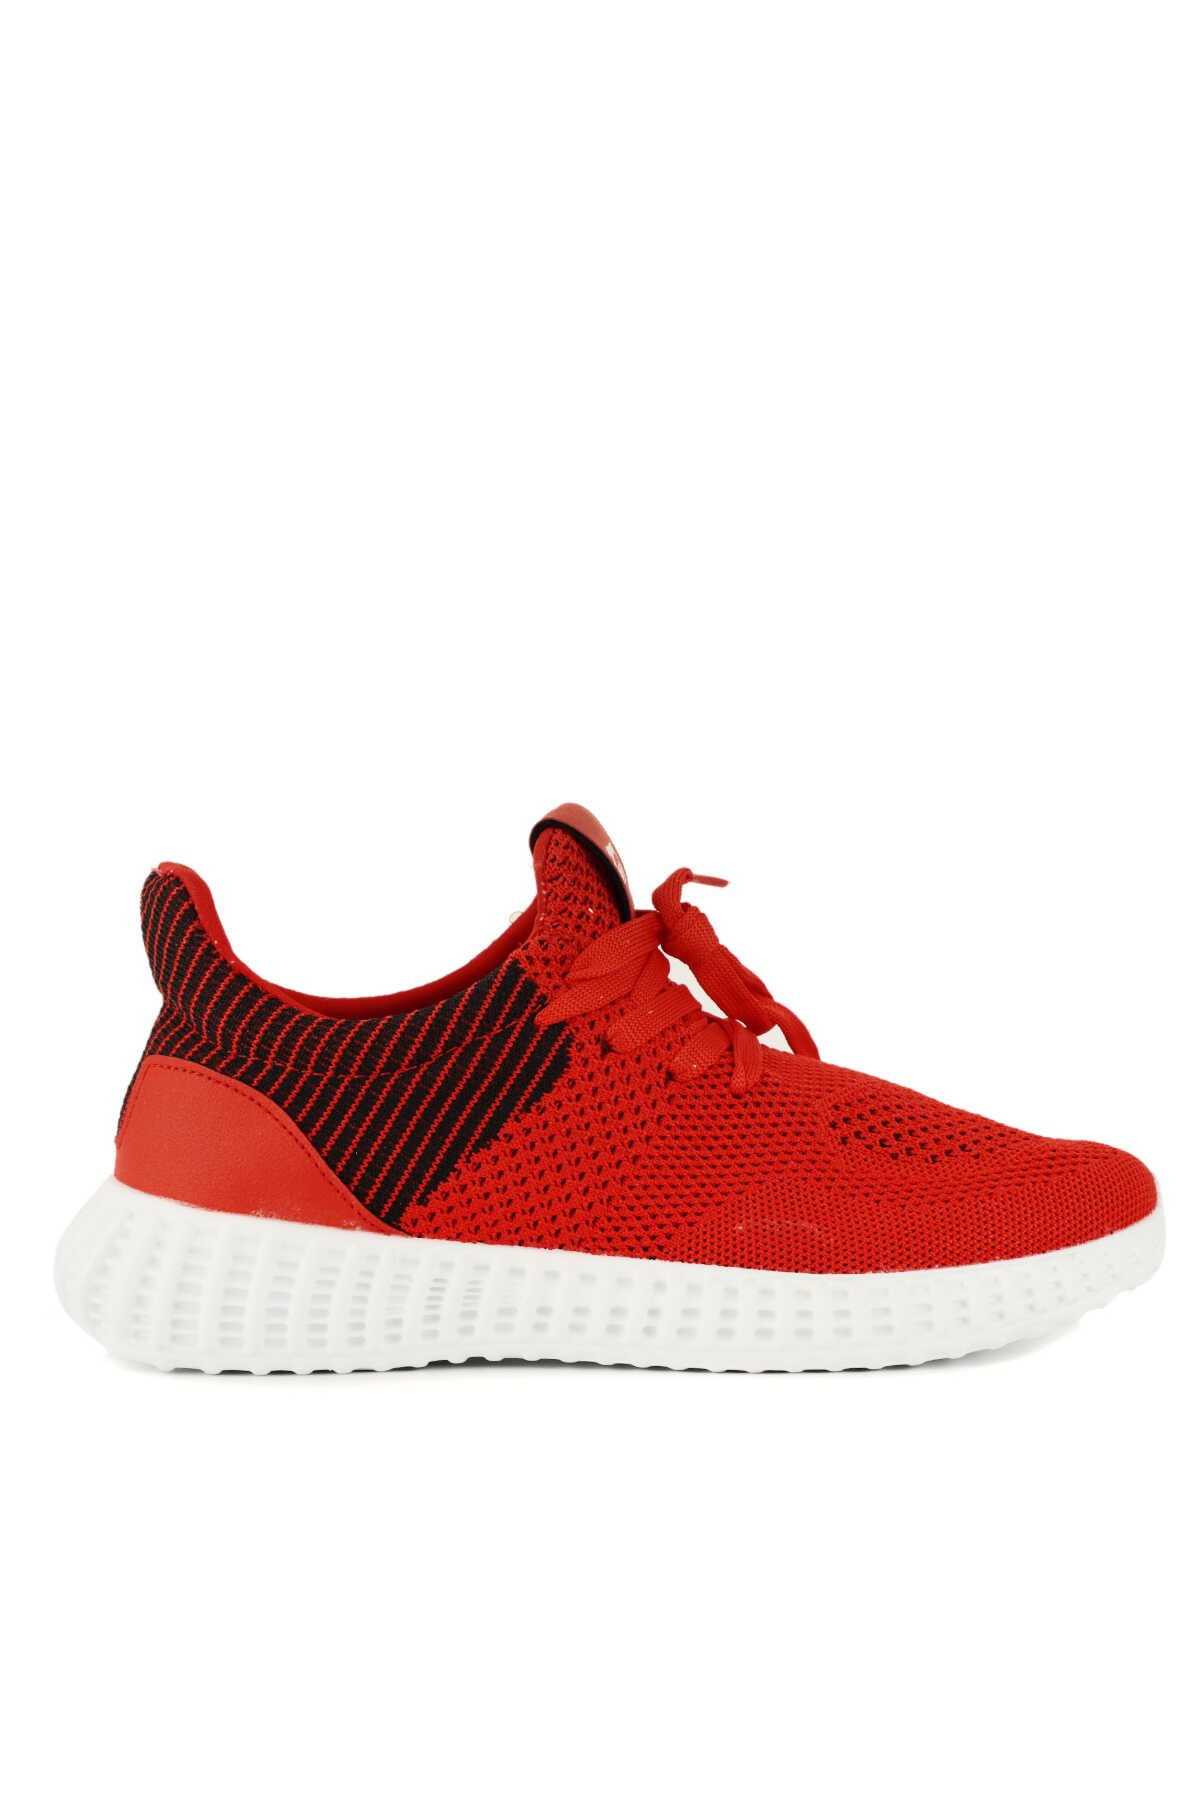 Slazenger ATOMIC Sneaker Erkek Ayakkabı Kırmızı